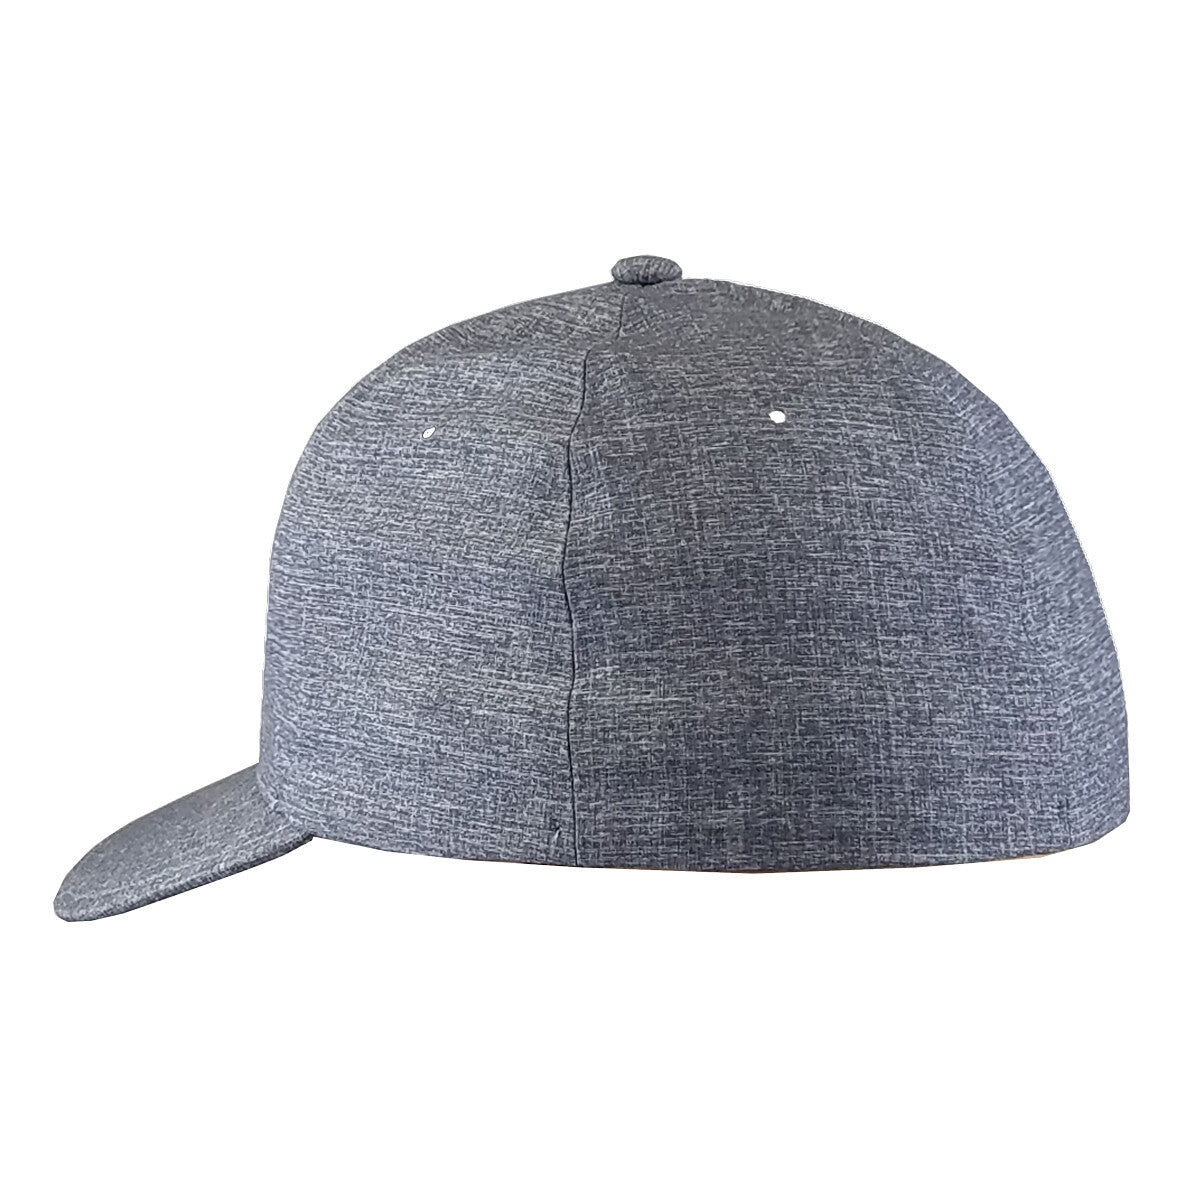 IMSA Flexfit Hat - Carbon Blue